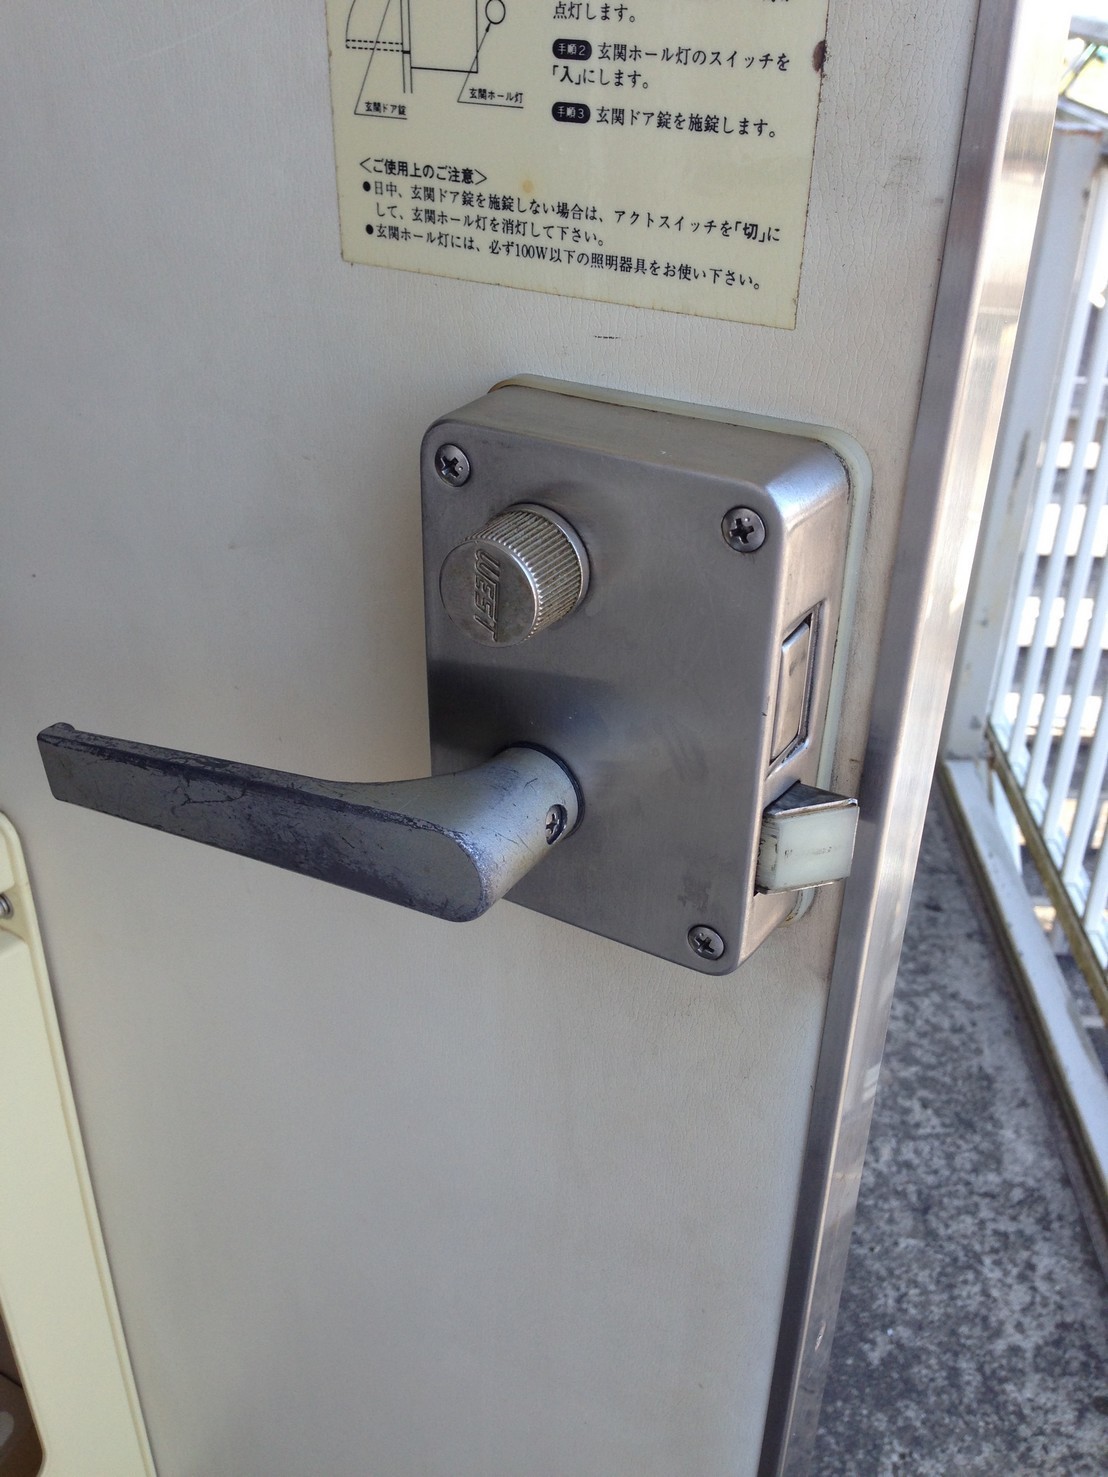 千葉市中央区新千葉で WEST,ウエスト WCY-65シリンダーに鍵交換しました: 鍵の卸売センター